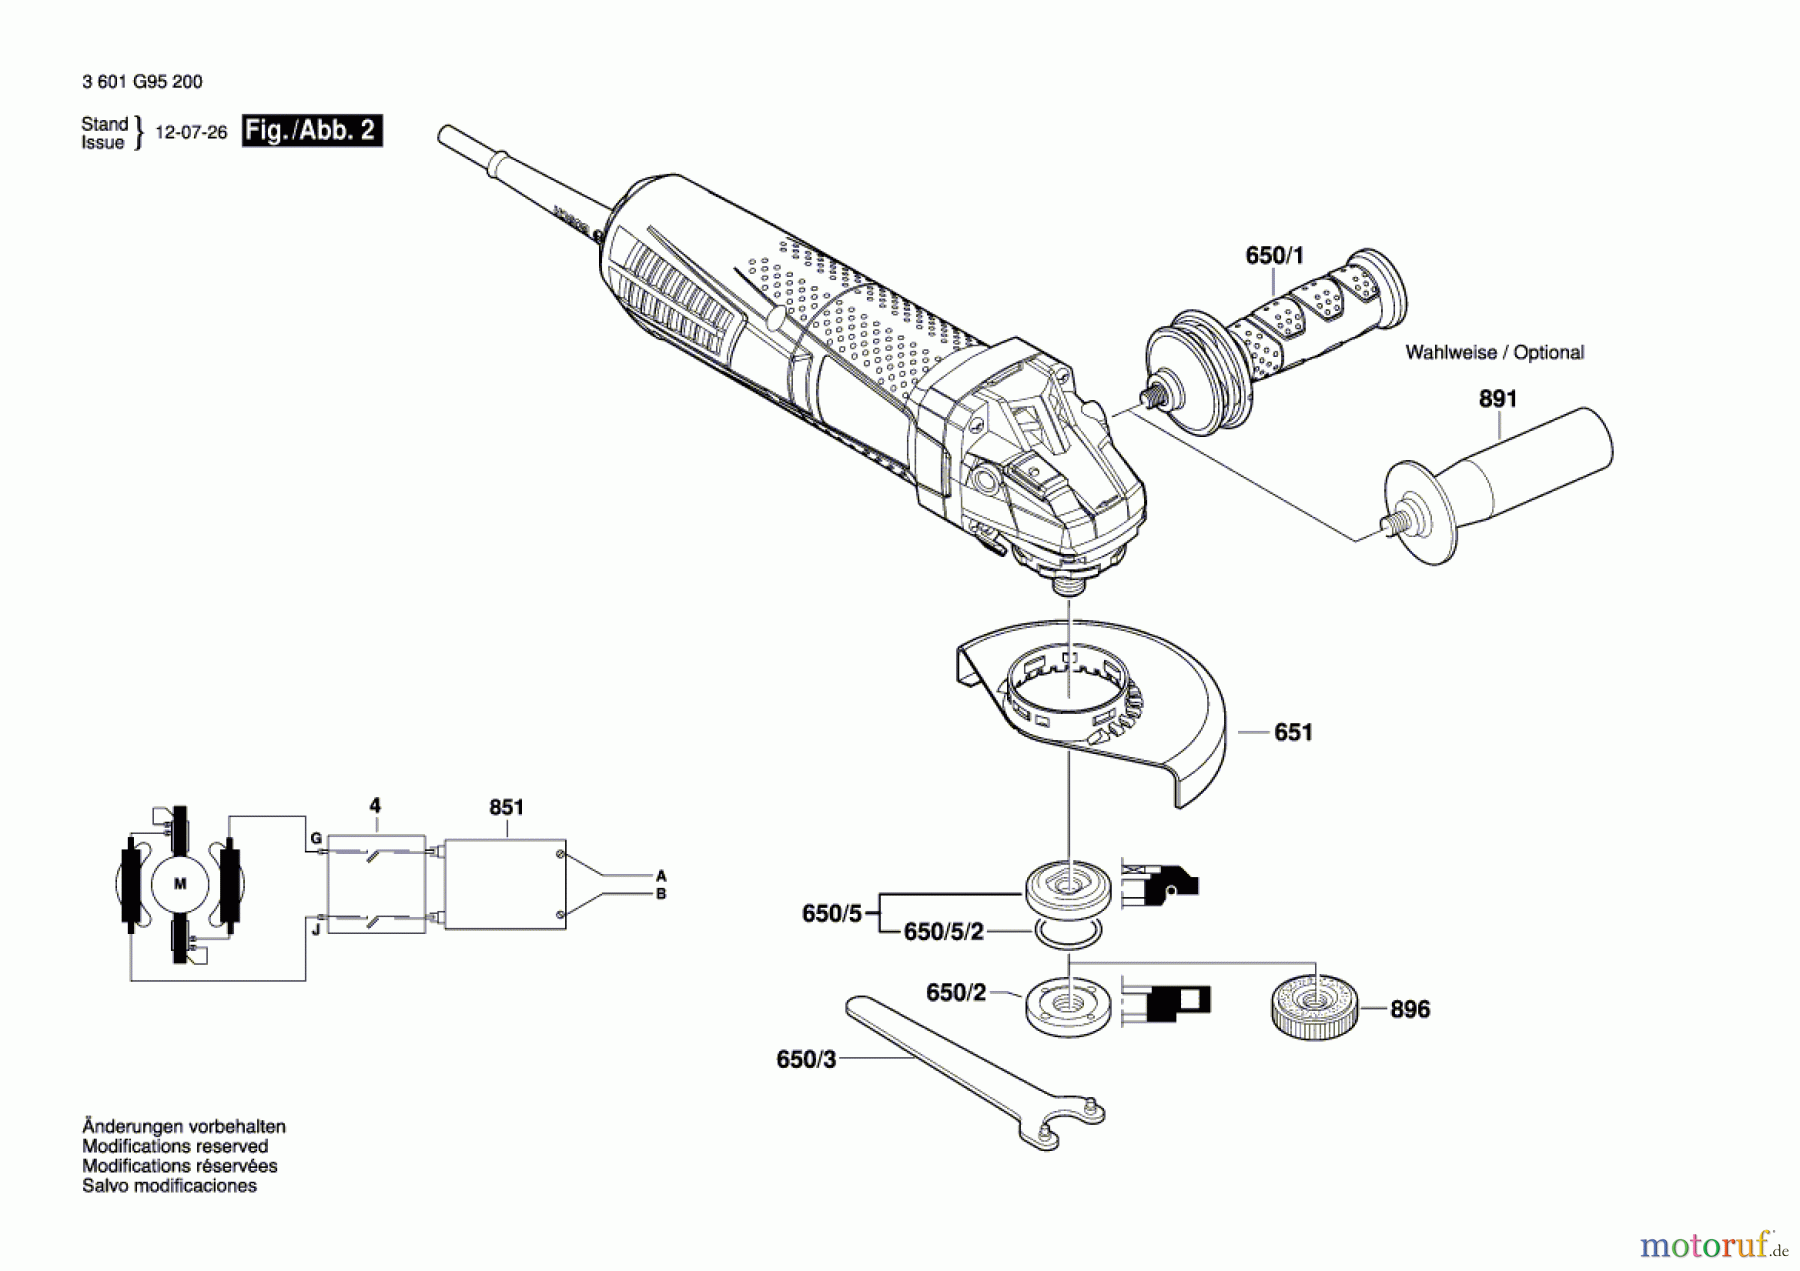  Bosch Werkzeug Winkelschleifer GWS 15-125 CIP Seite 2